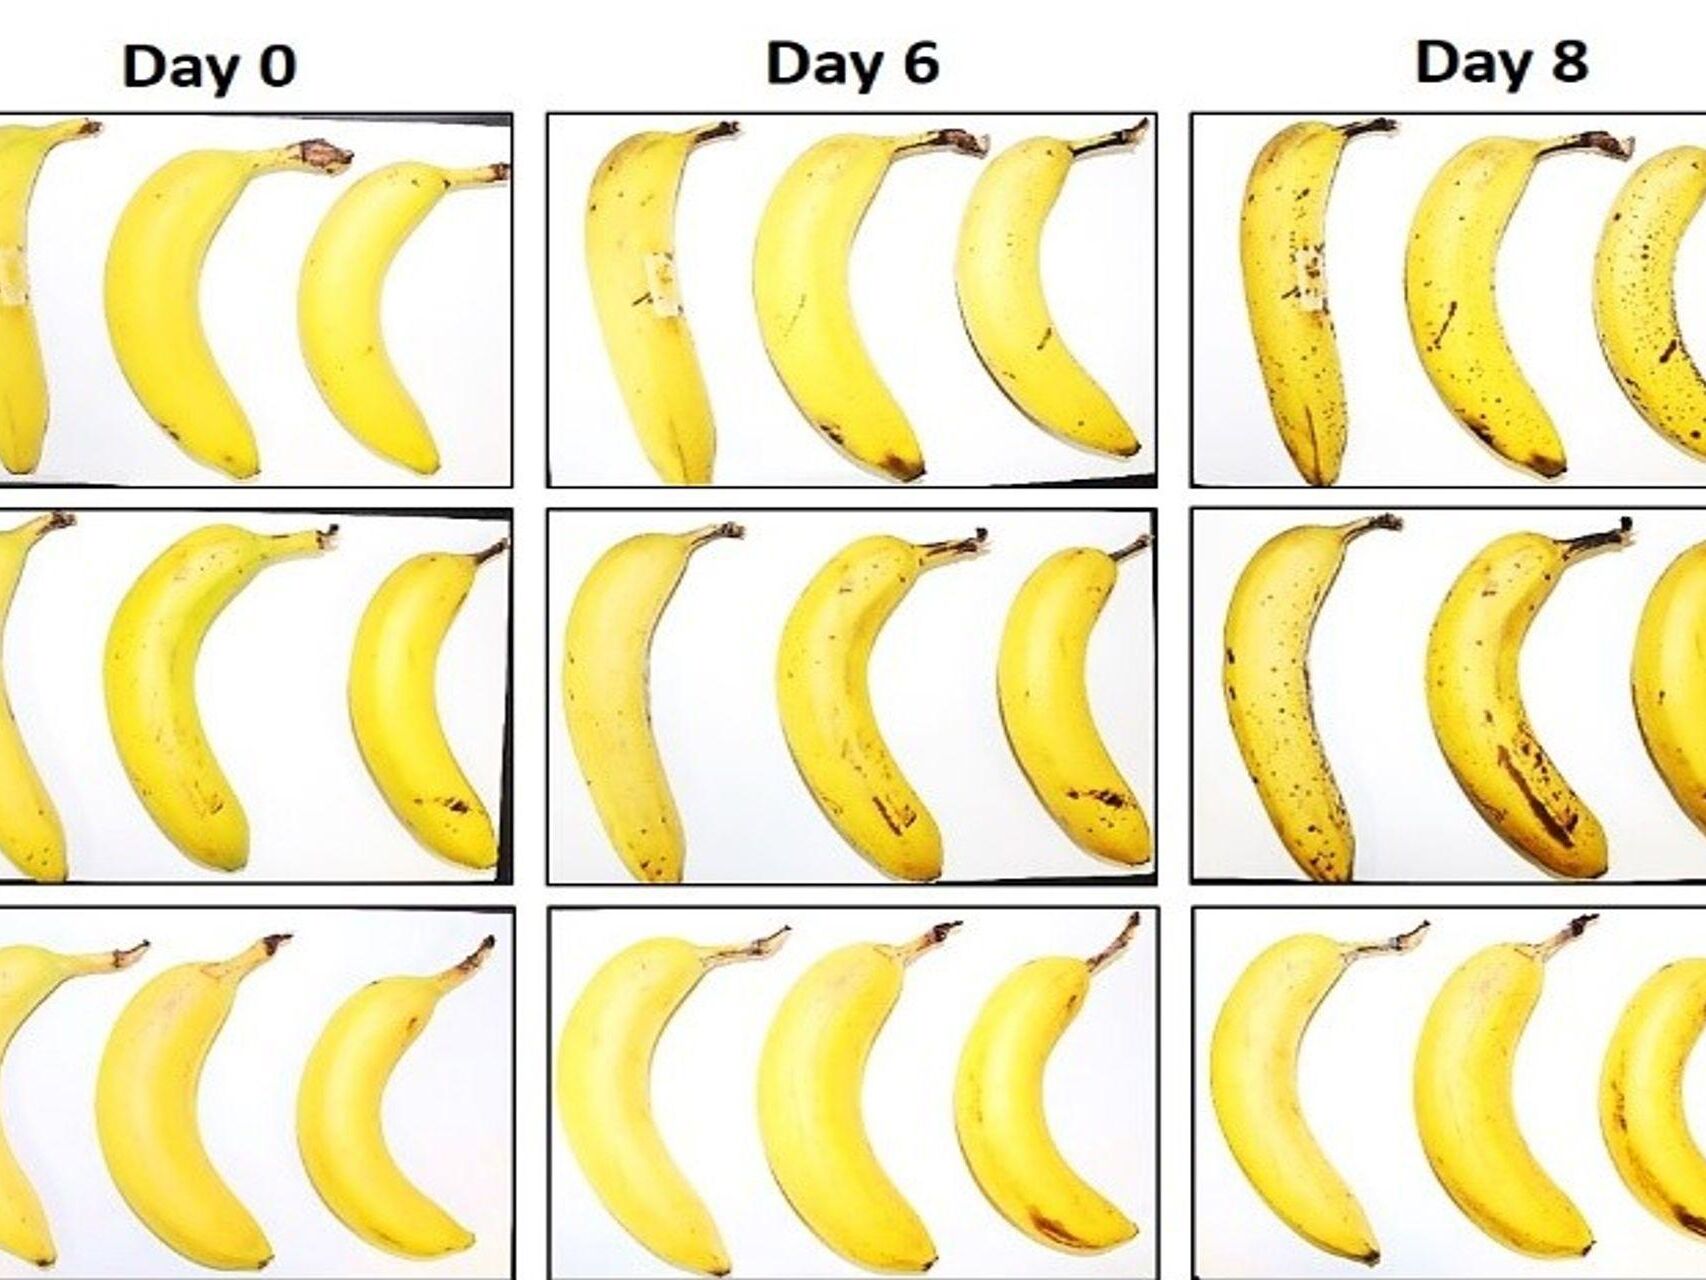 Tre banane të nënshtruara nga EMPA dhe Lidl Zvicër ndaj testit të konservimit me dhe pa mbështjellje celuloze fibroze pas zero, 6 dhe 8 ditësh